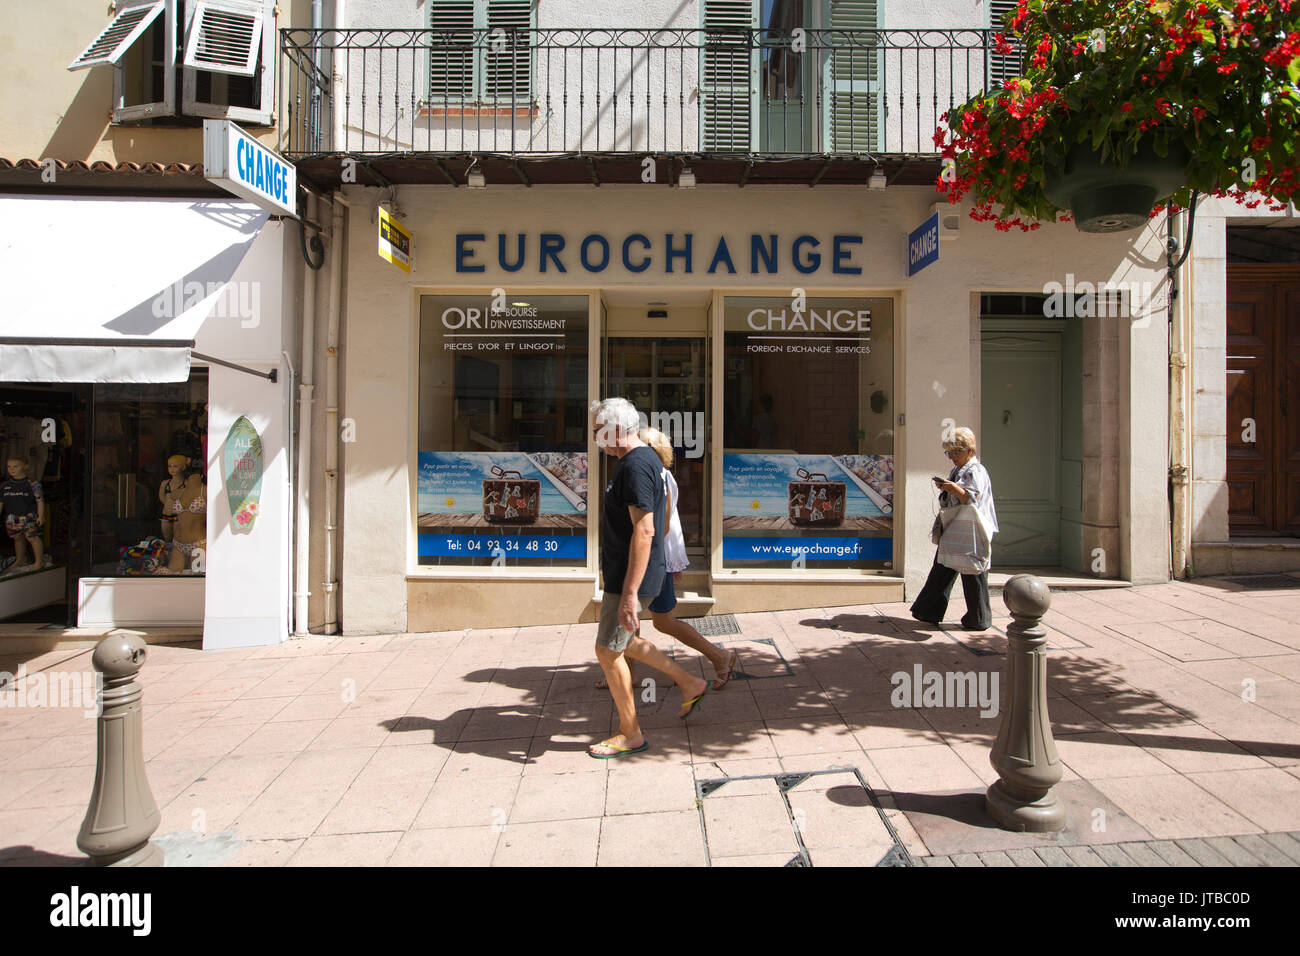 EUROCHANGE foreign exchange il ramo di Antibes, in località mediterranea città situata tra Cannes e Nizza sulla Costa Azzurra, Provence-Alpes-Côte d'Azur Foto Stock